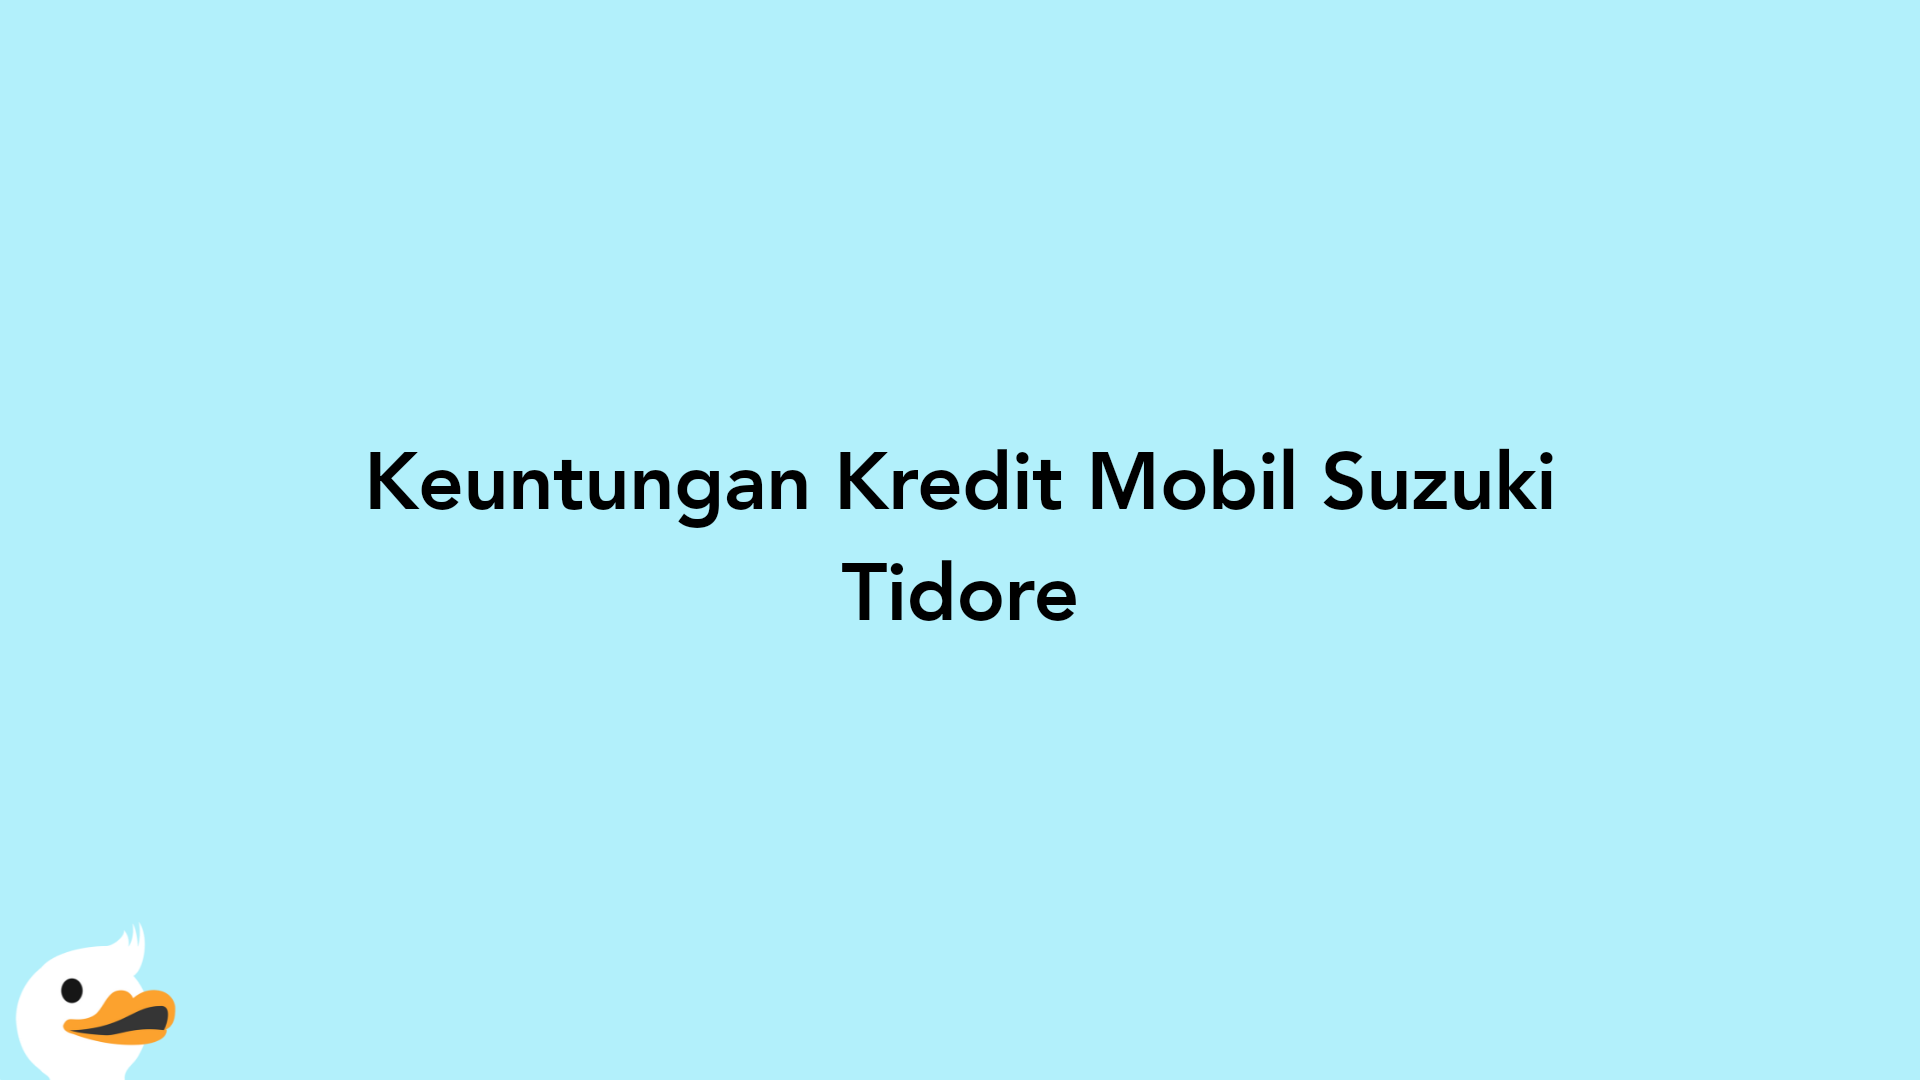 Keuntungan Kredit Mobil Suzuki Tidore